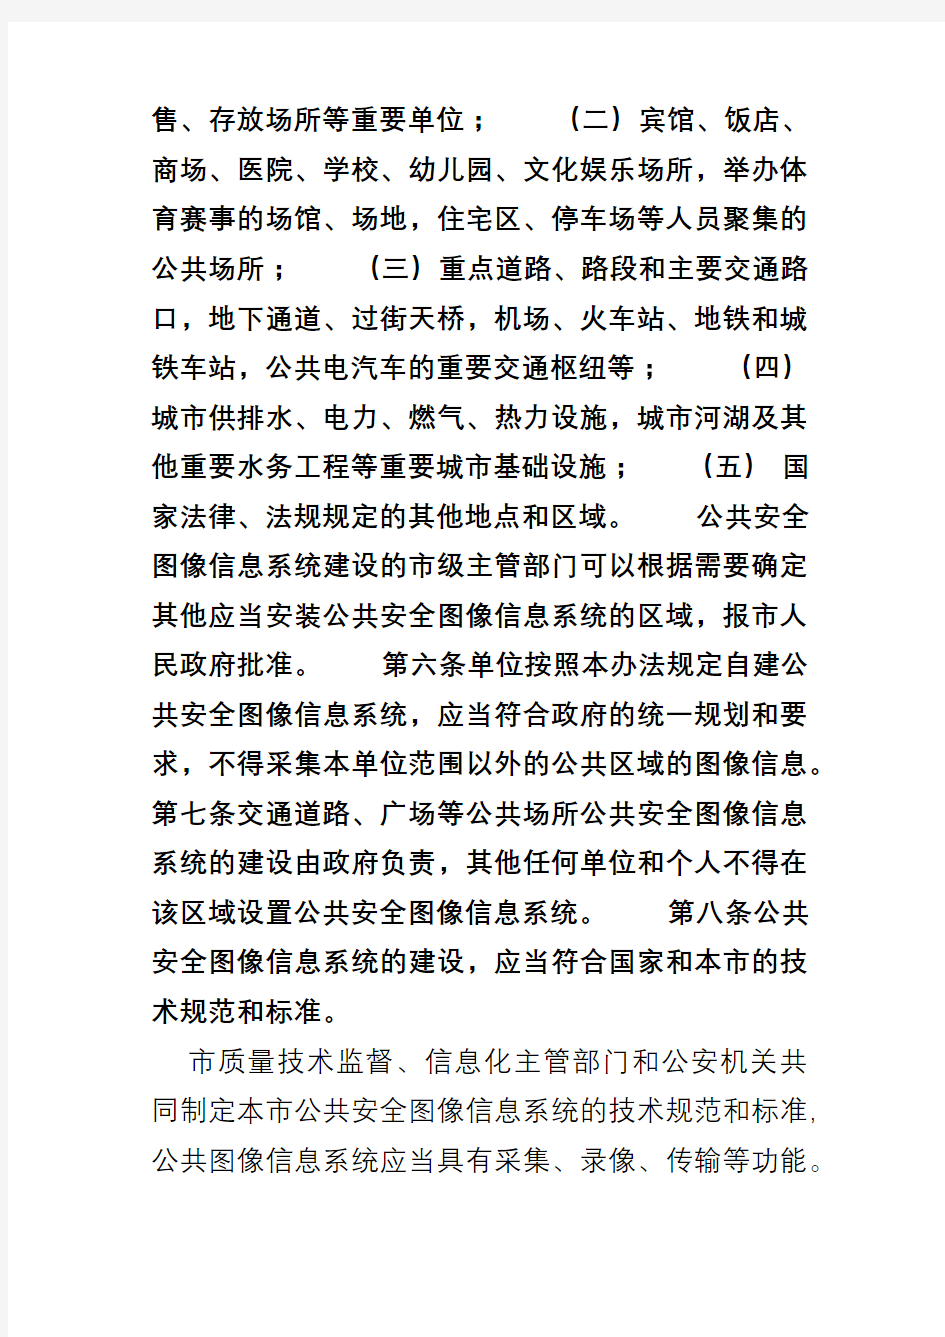 北京市公共安全图像信息系统管理办法185号令